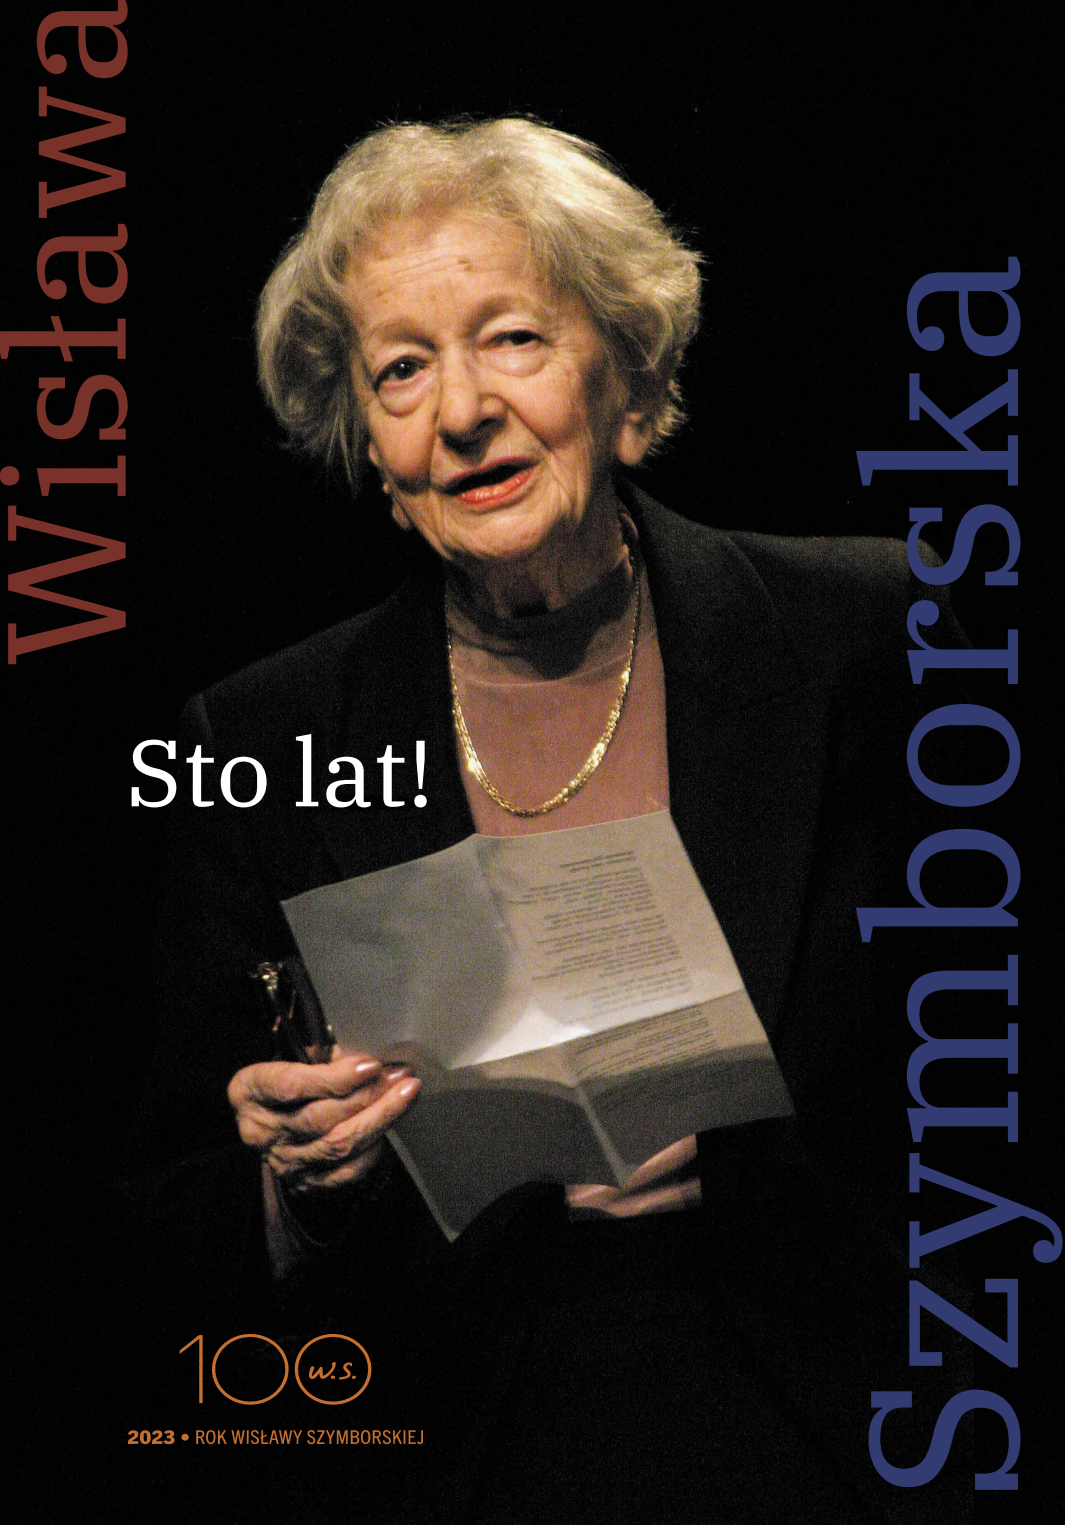 Plakat wystawy "Sto lat!" - Rok Szymborskiej